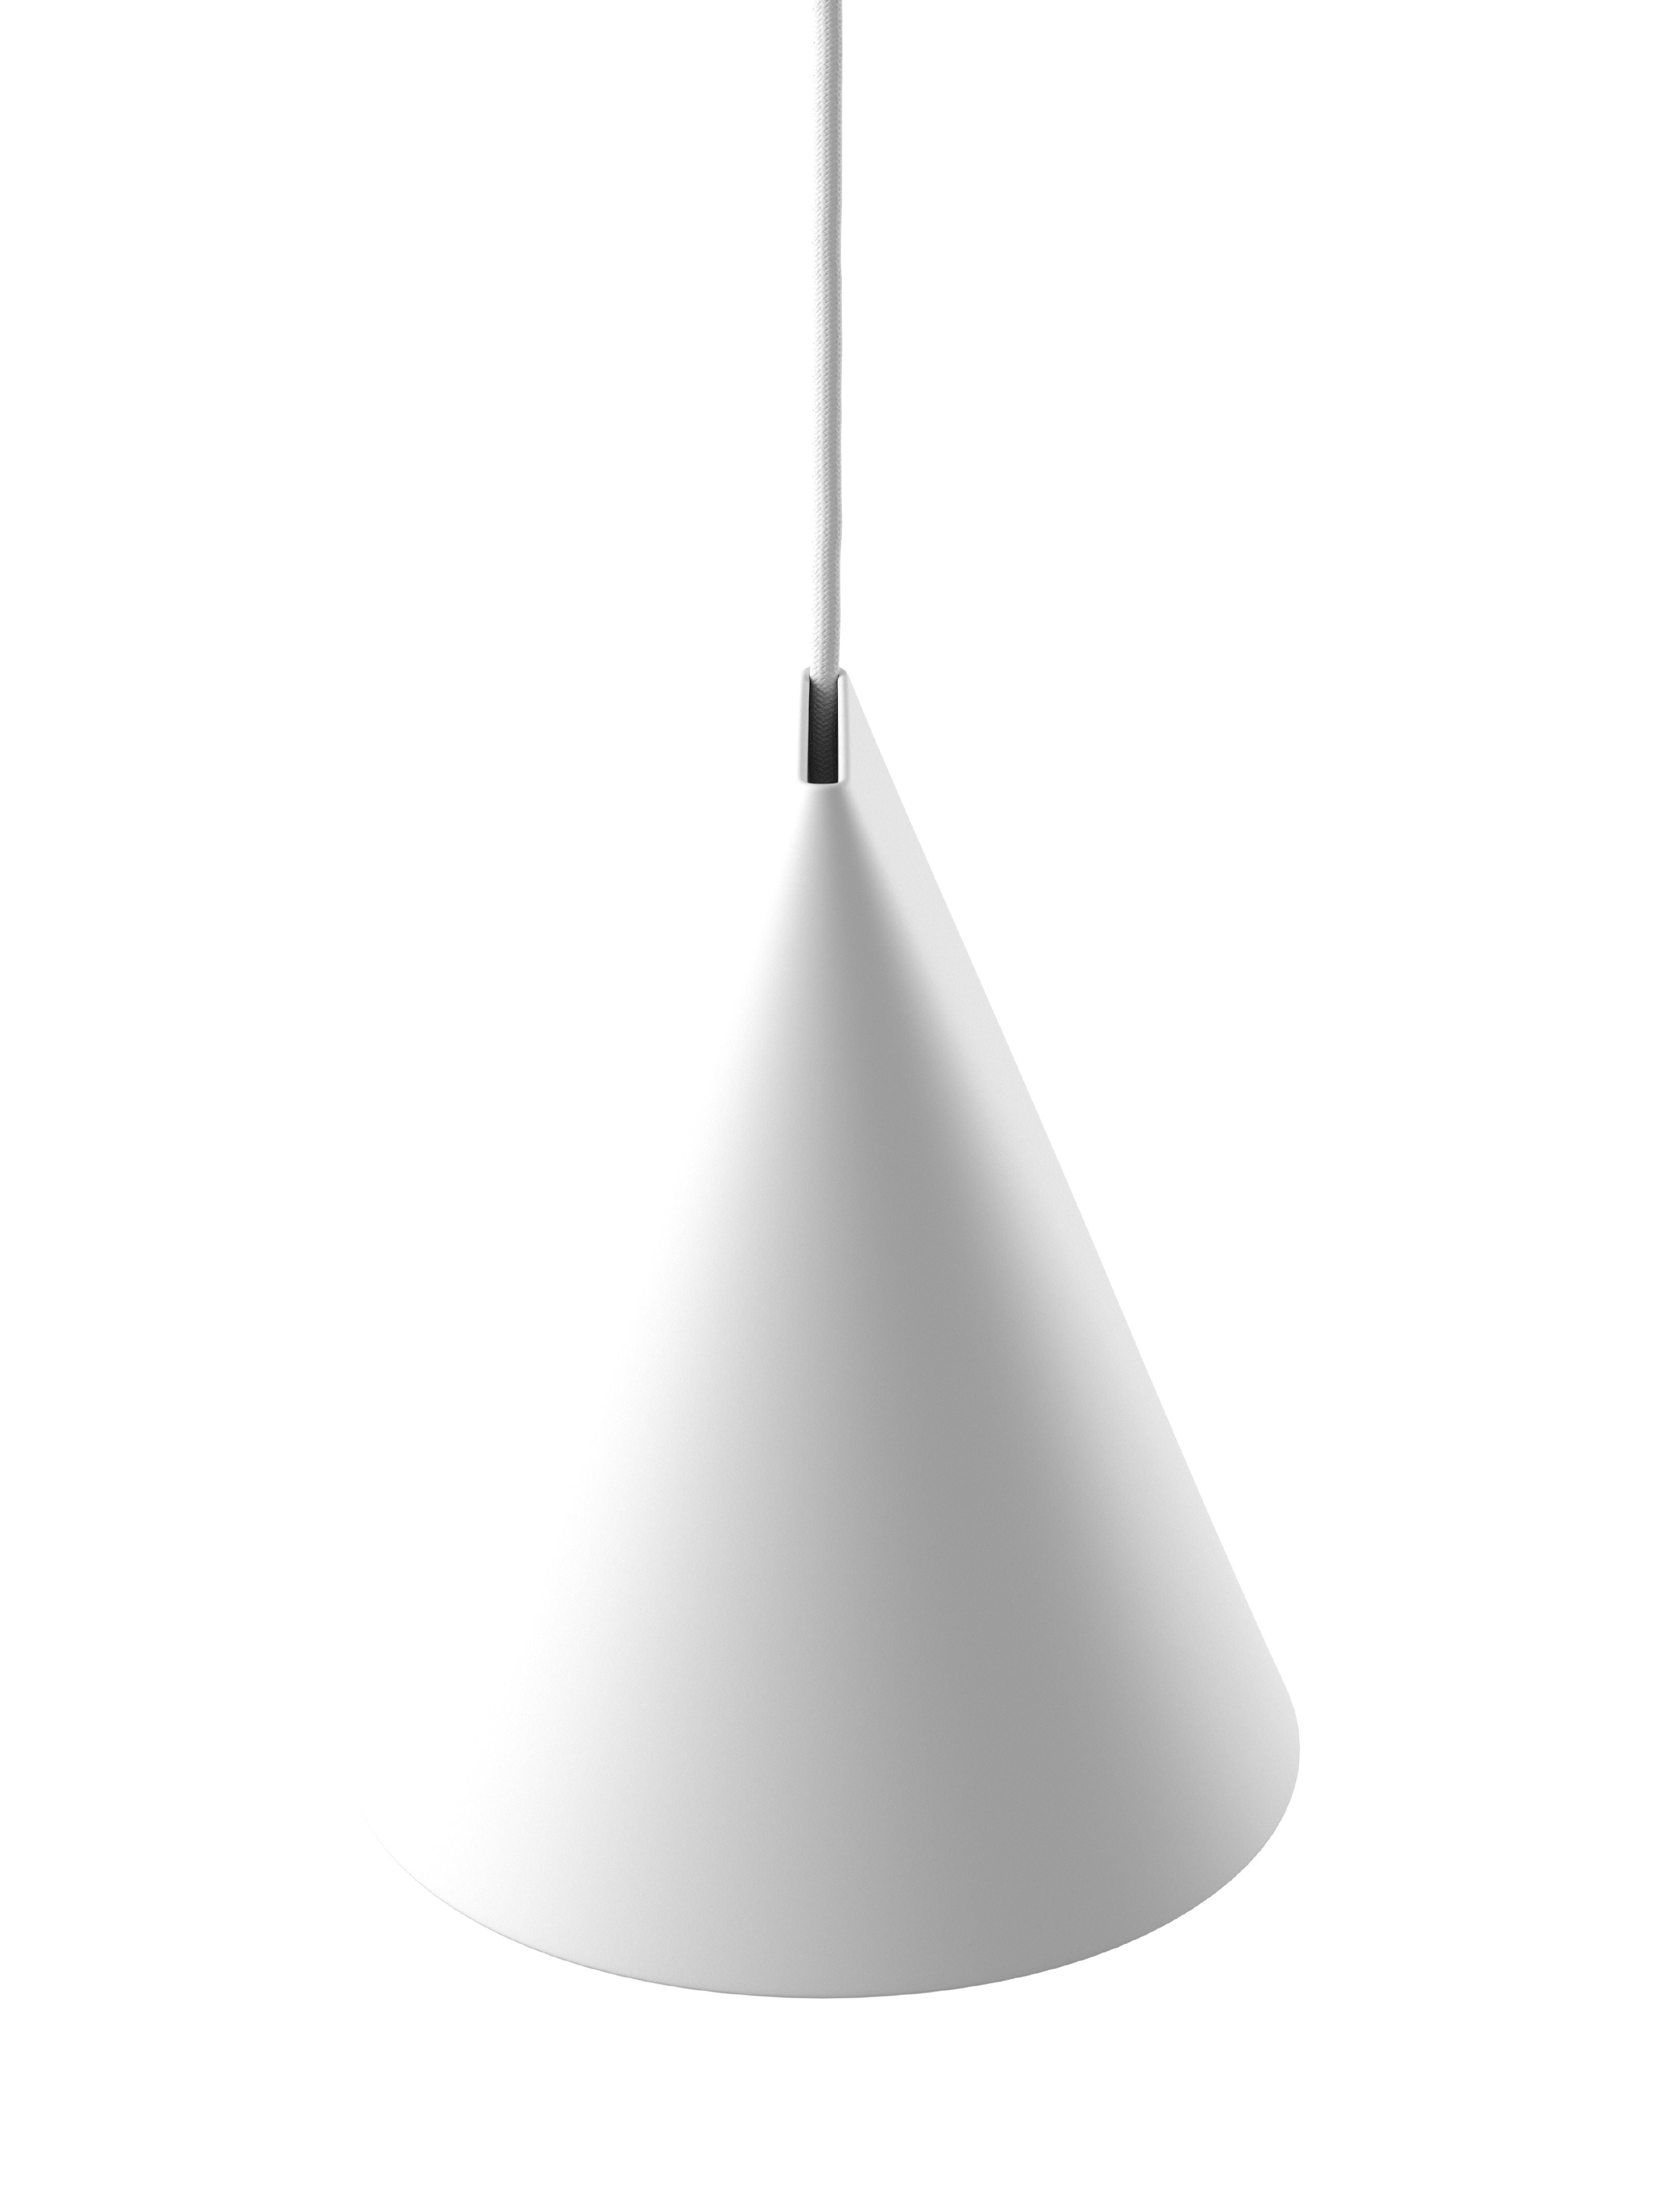 Moebe Keramik -Anhängerlampe 23 cm, weiß